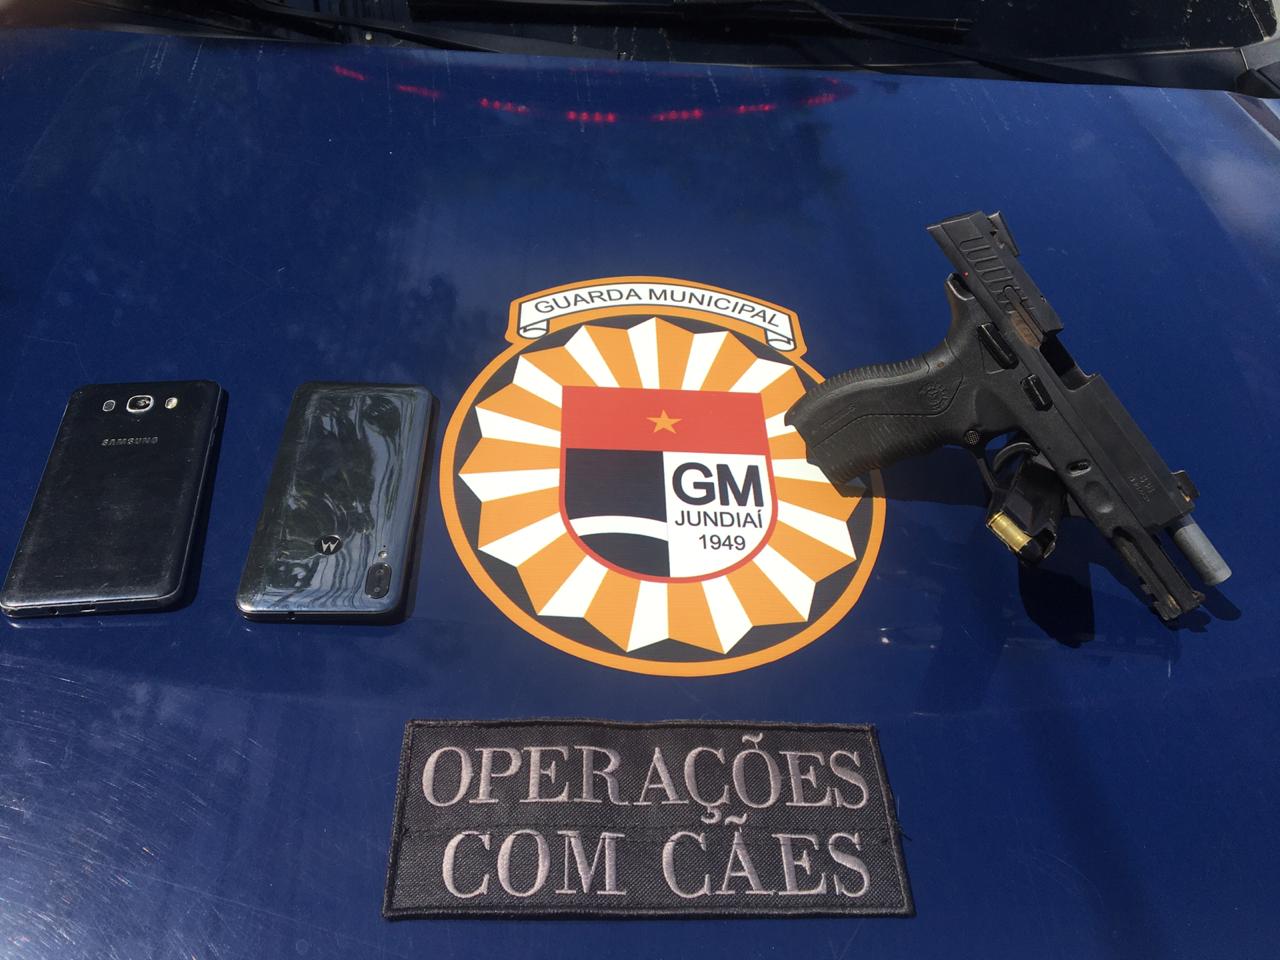 arma e celulares em cima de uma mesa com o símbolo da guarda municipal